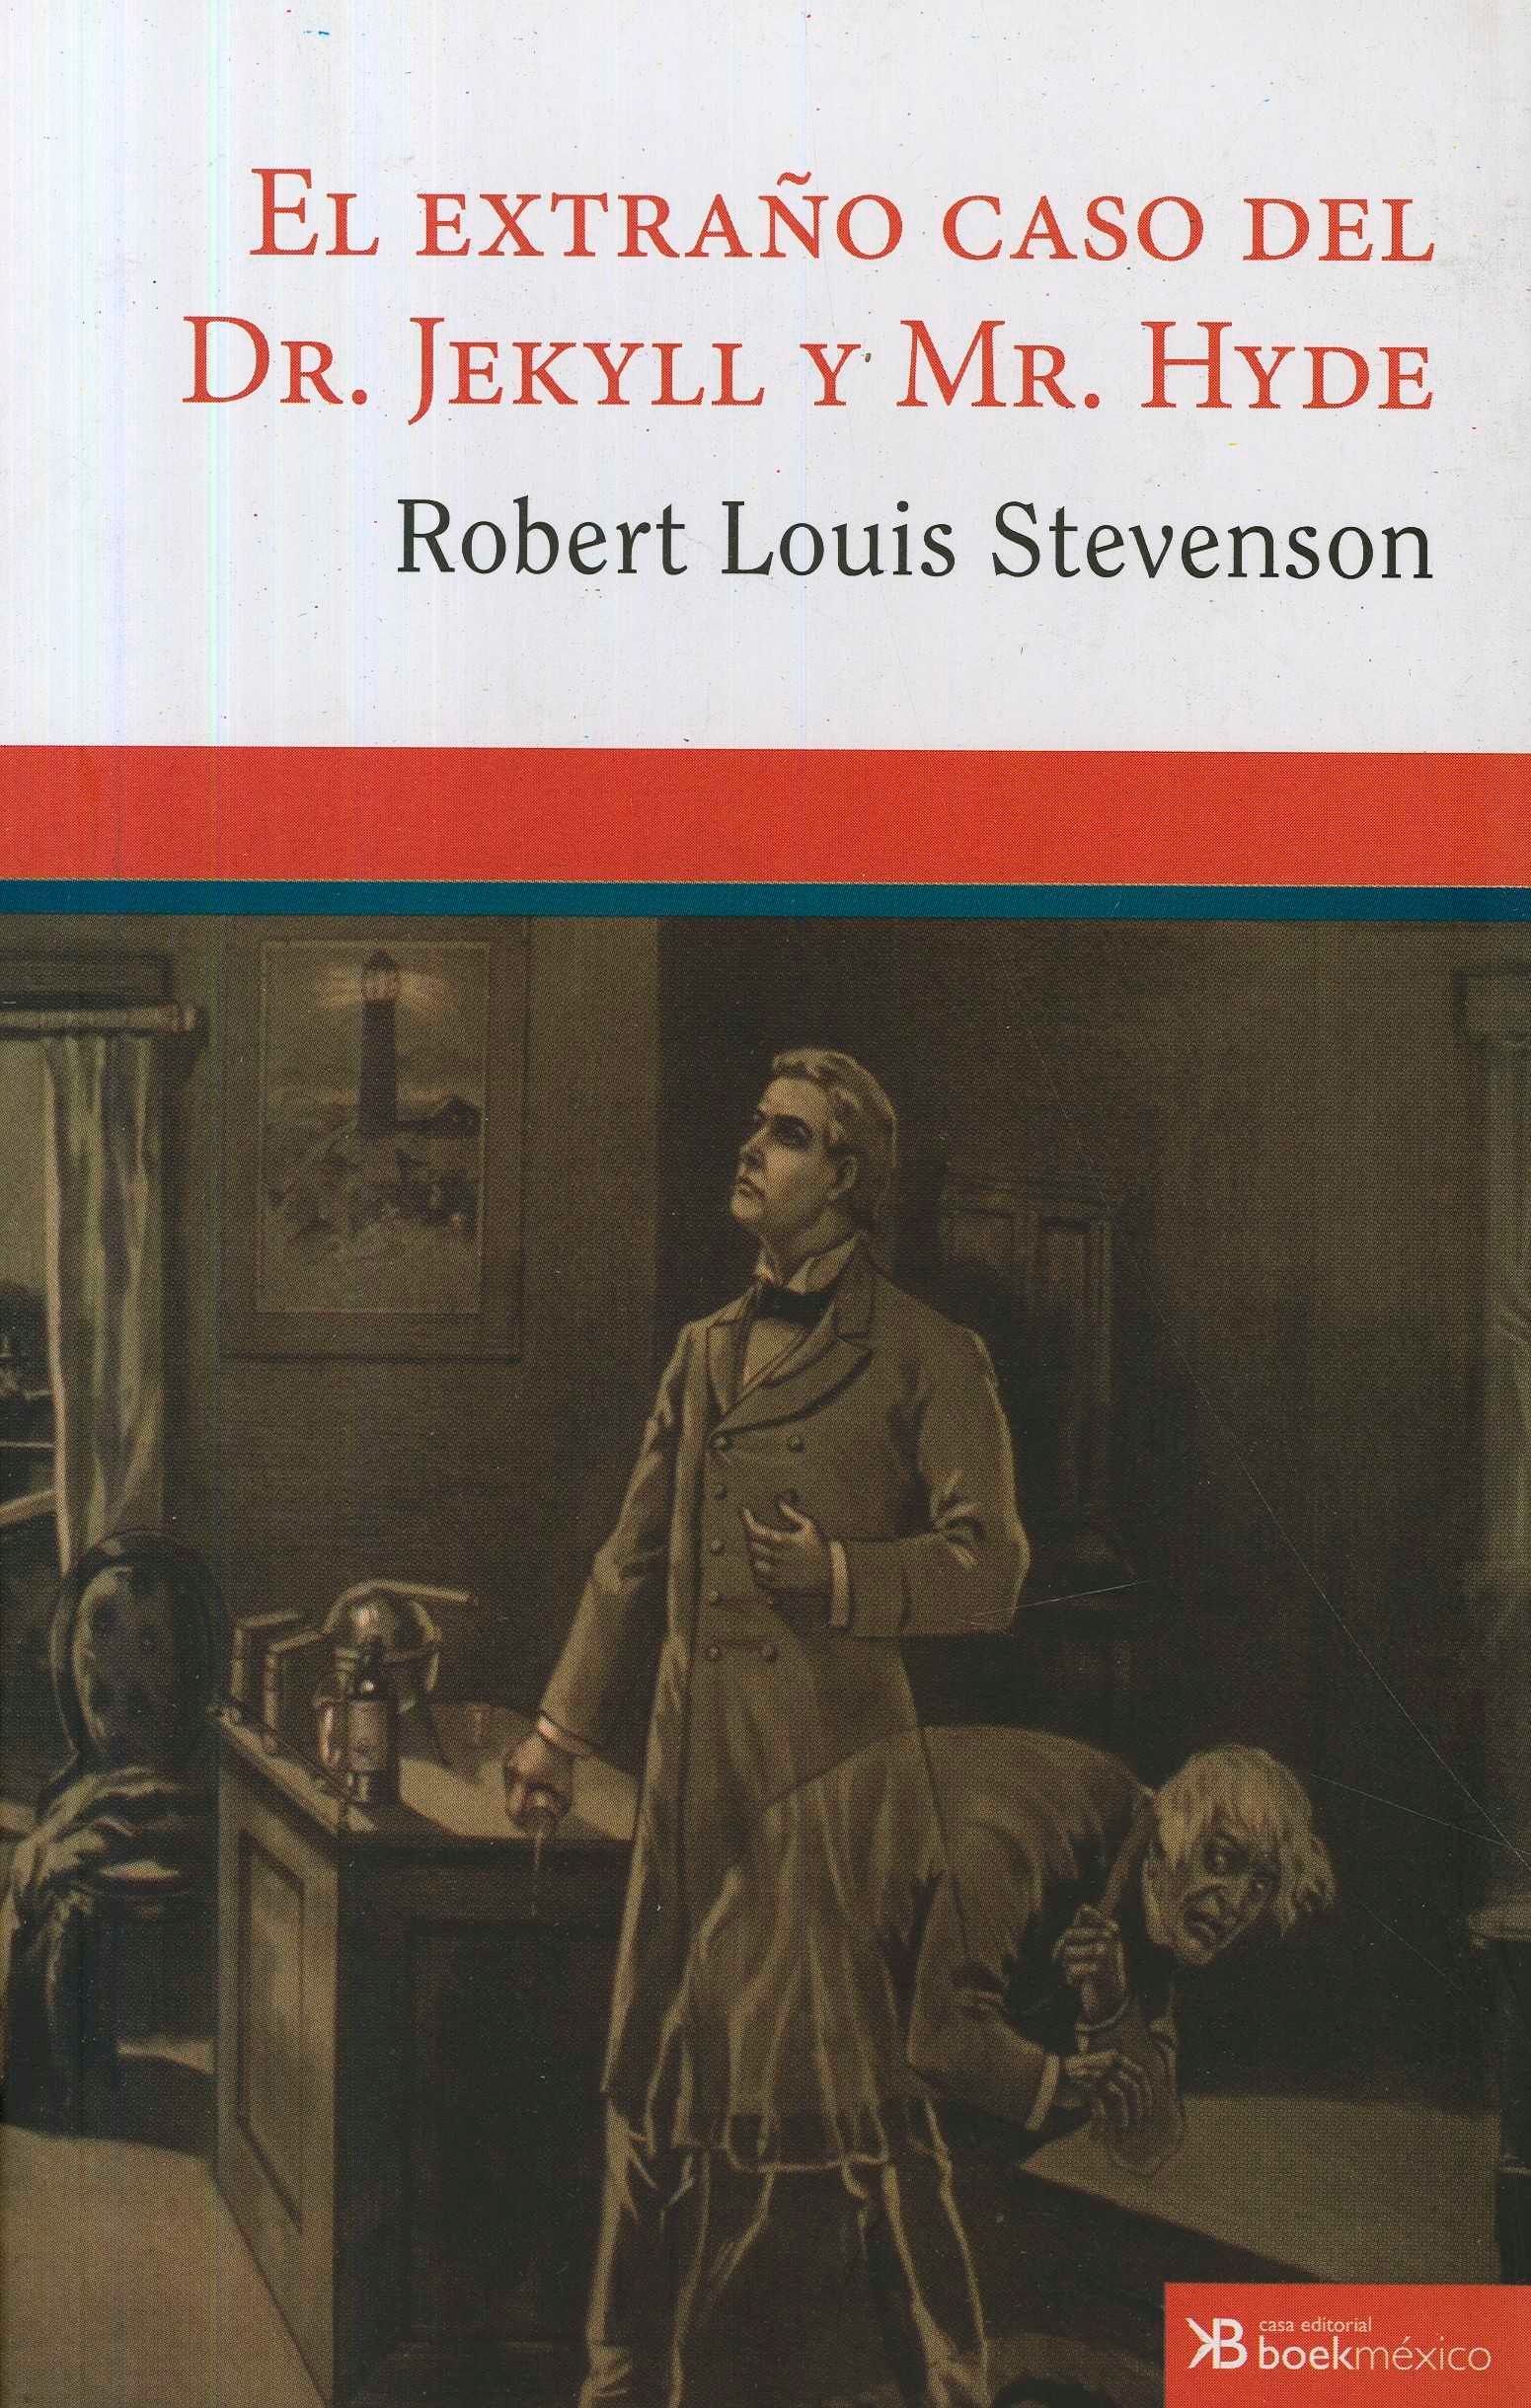 El extraño caso del Dr. Jekyll y Mr. Hyde (1886) de Robert Louis Stevenson